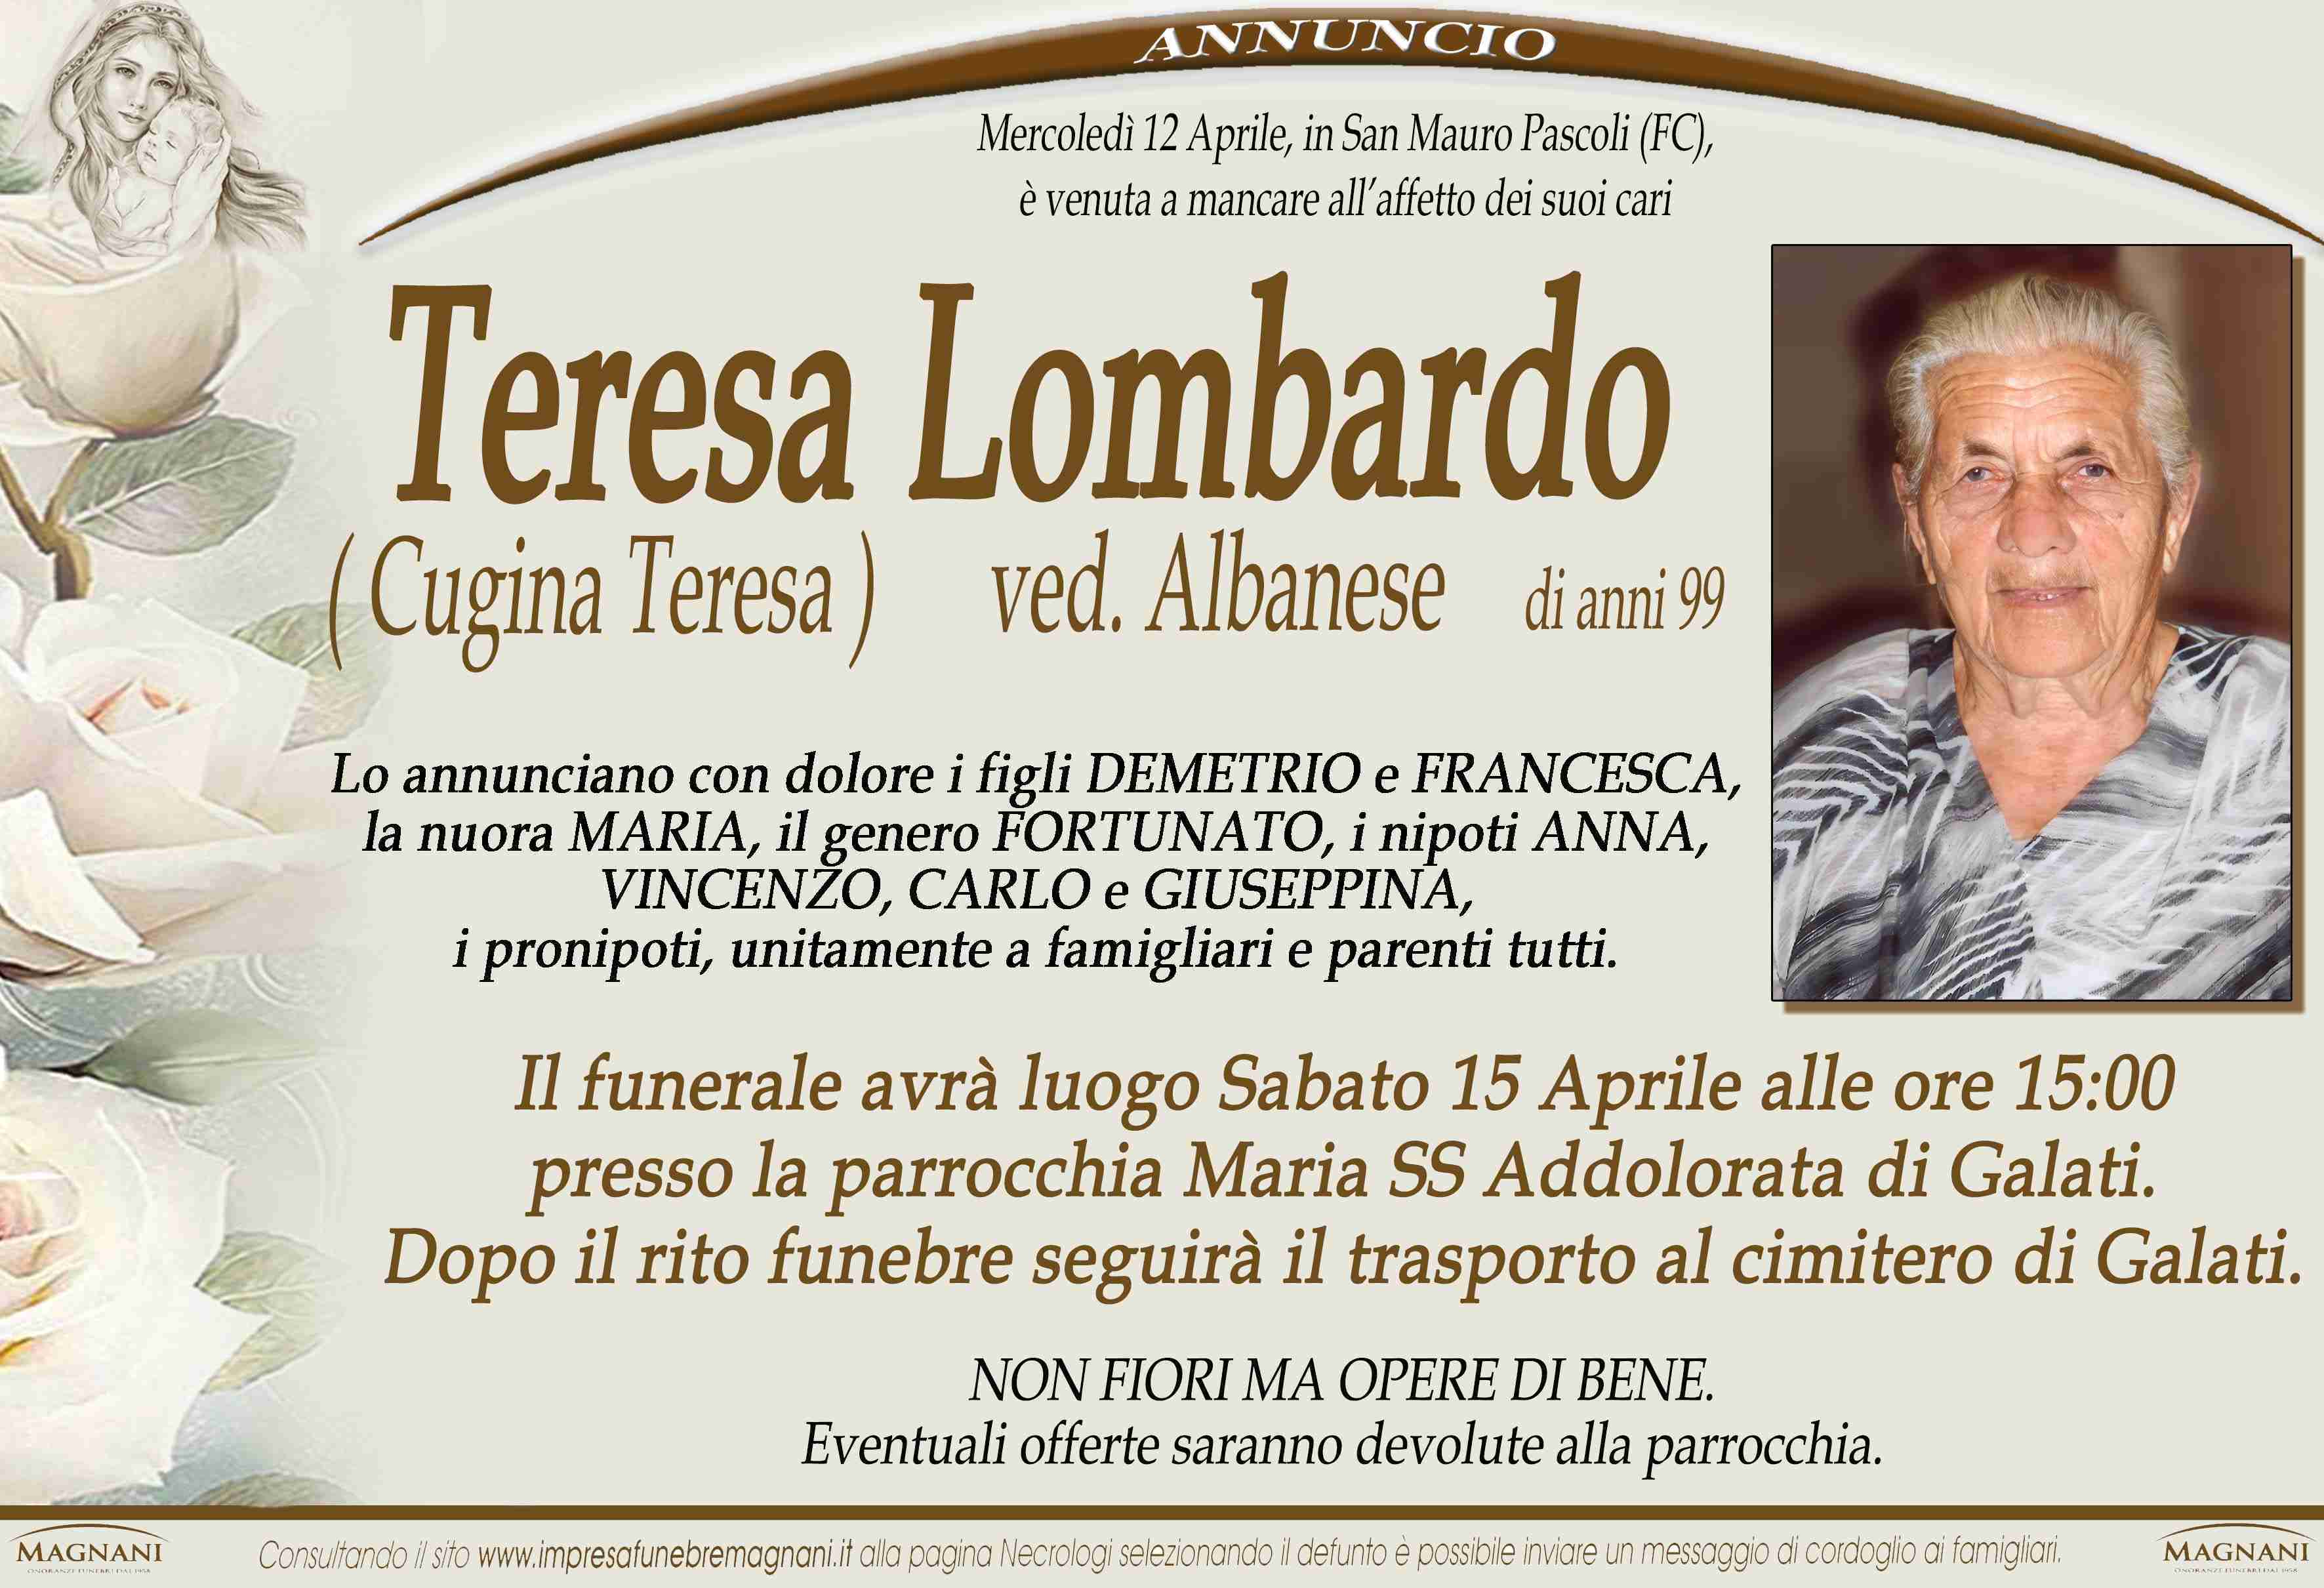 Teresa Lombardo